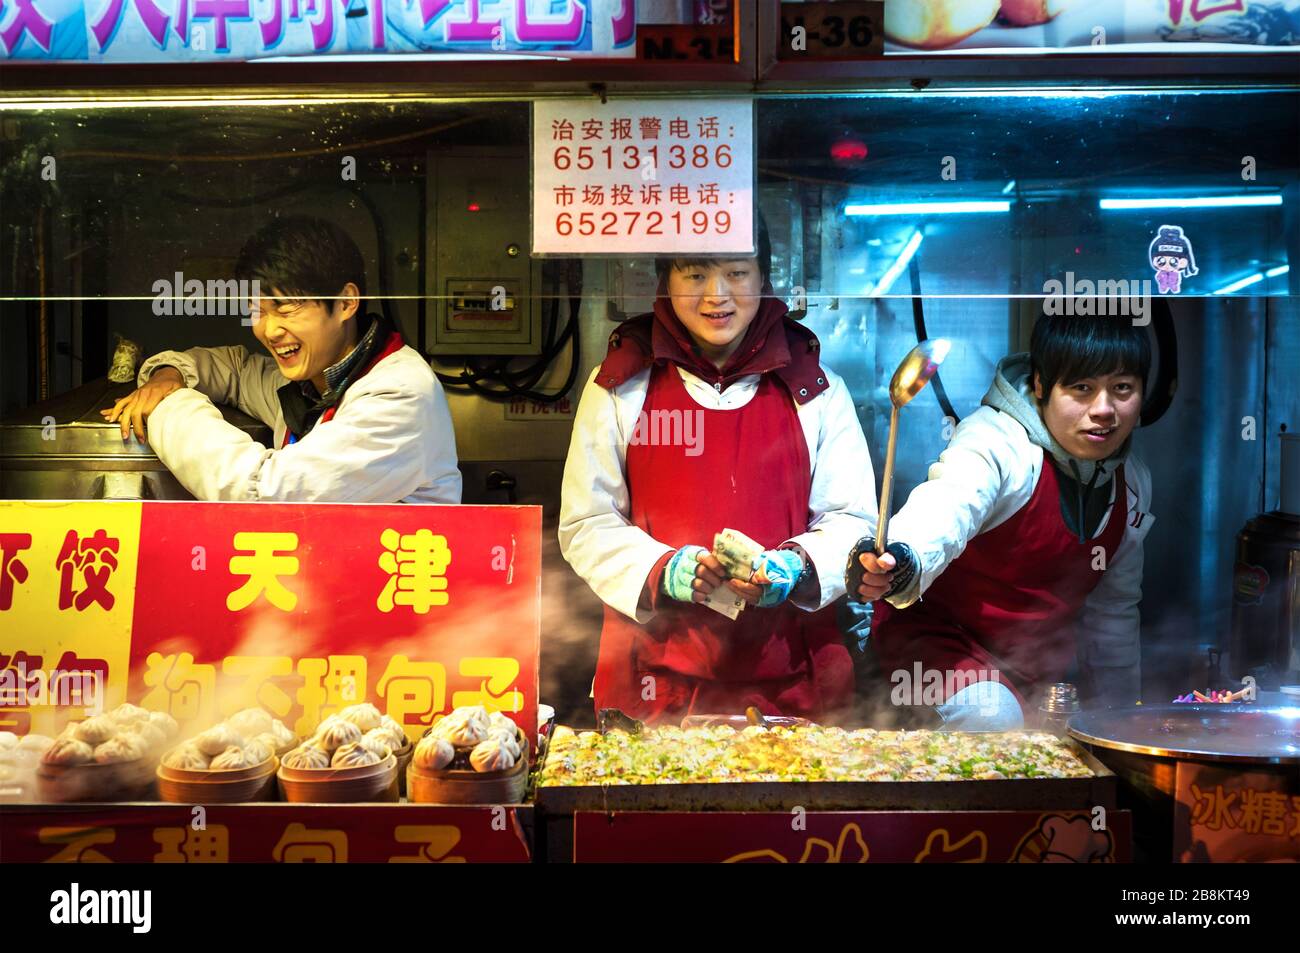 WANGFUJING NIGHT MARKET, BEIJING - DEC 25, 2013 - Young snack vendors enjoying themselves at Wangfujing snack street, Beijing Stock Photo